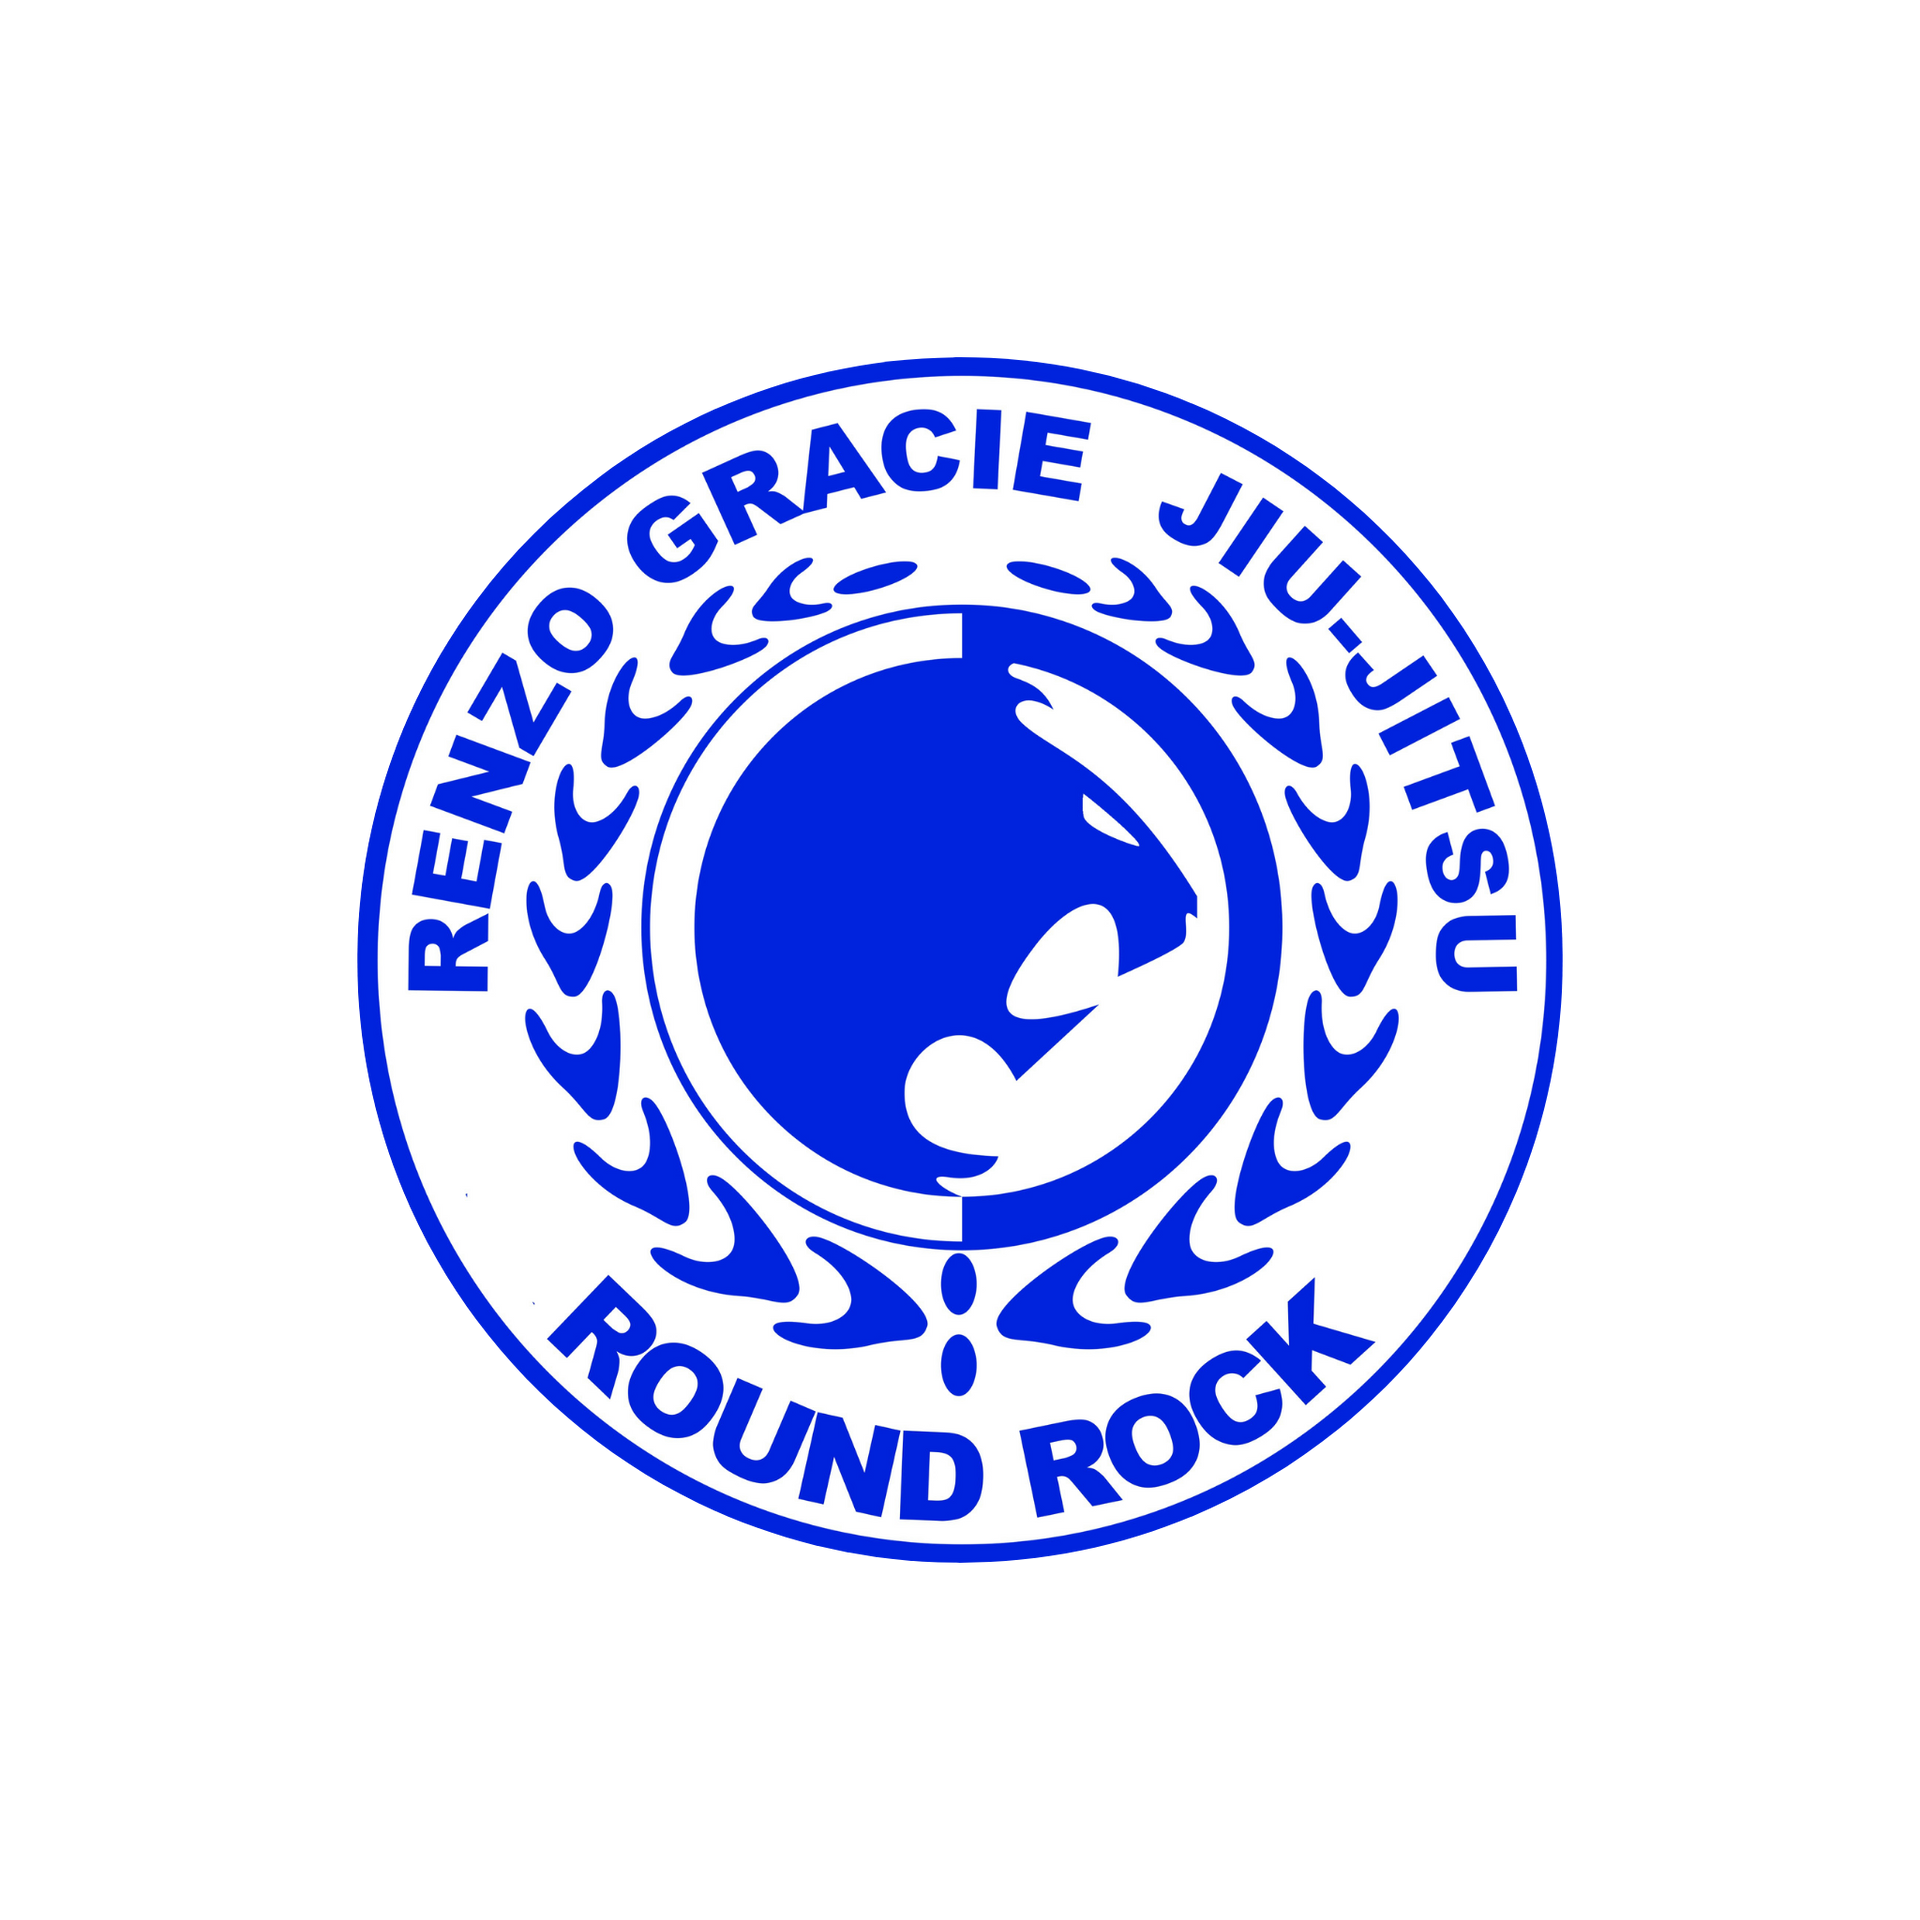 Renzo Gracie Round Rock Logo